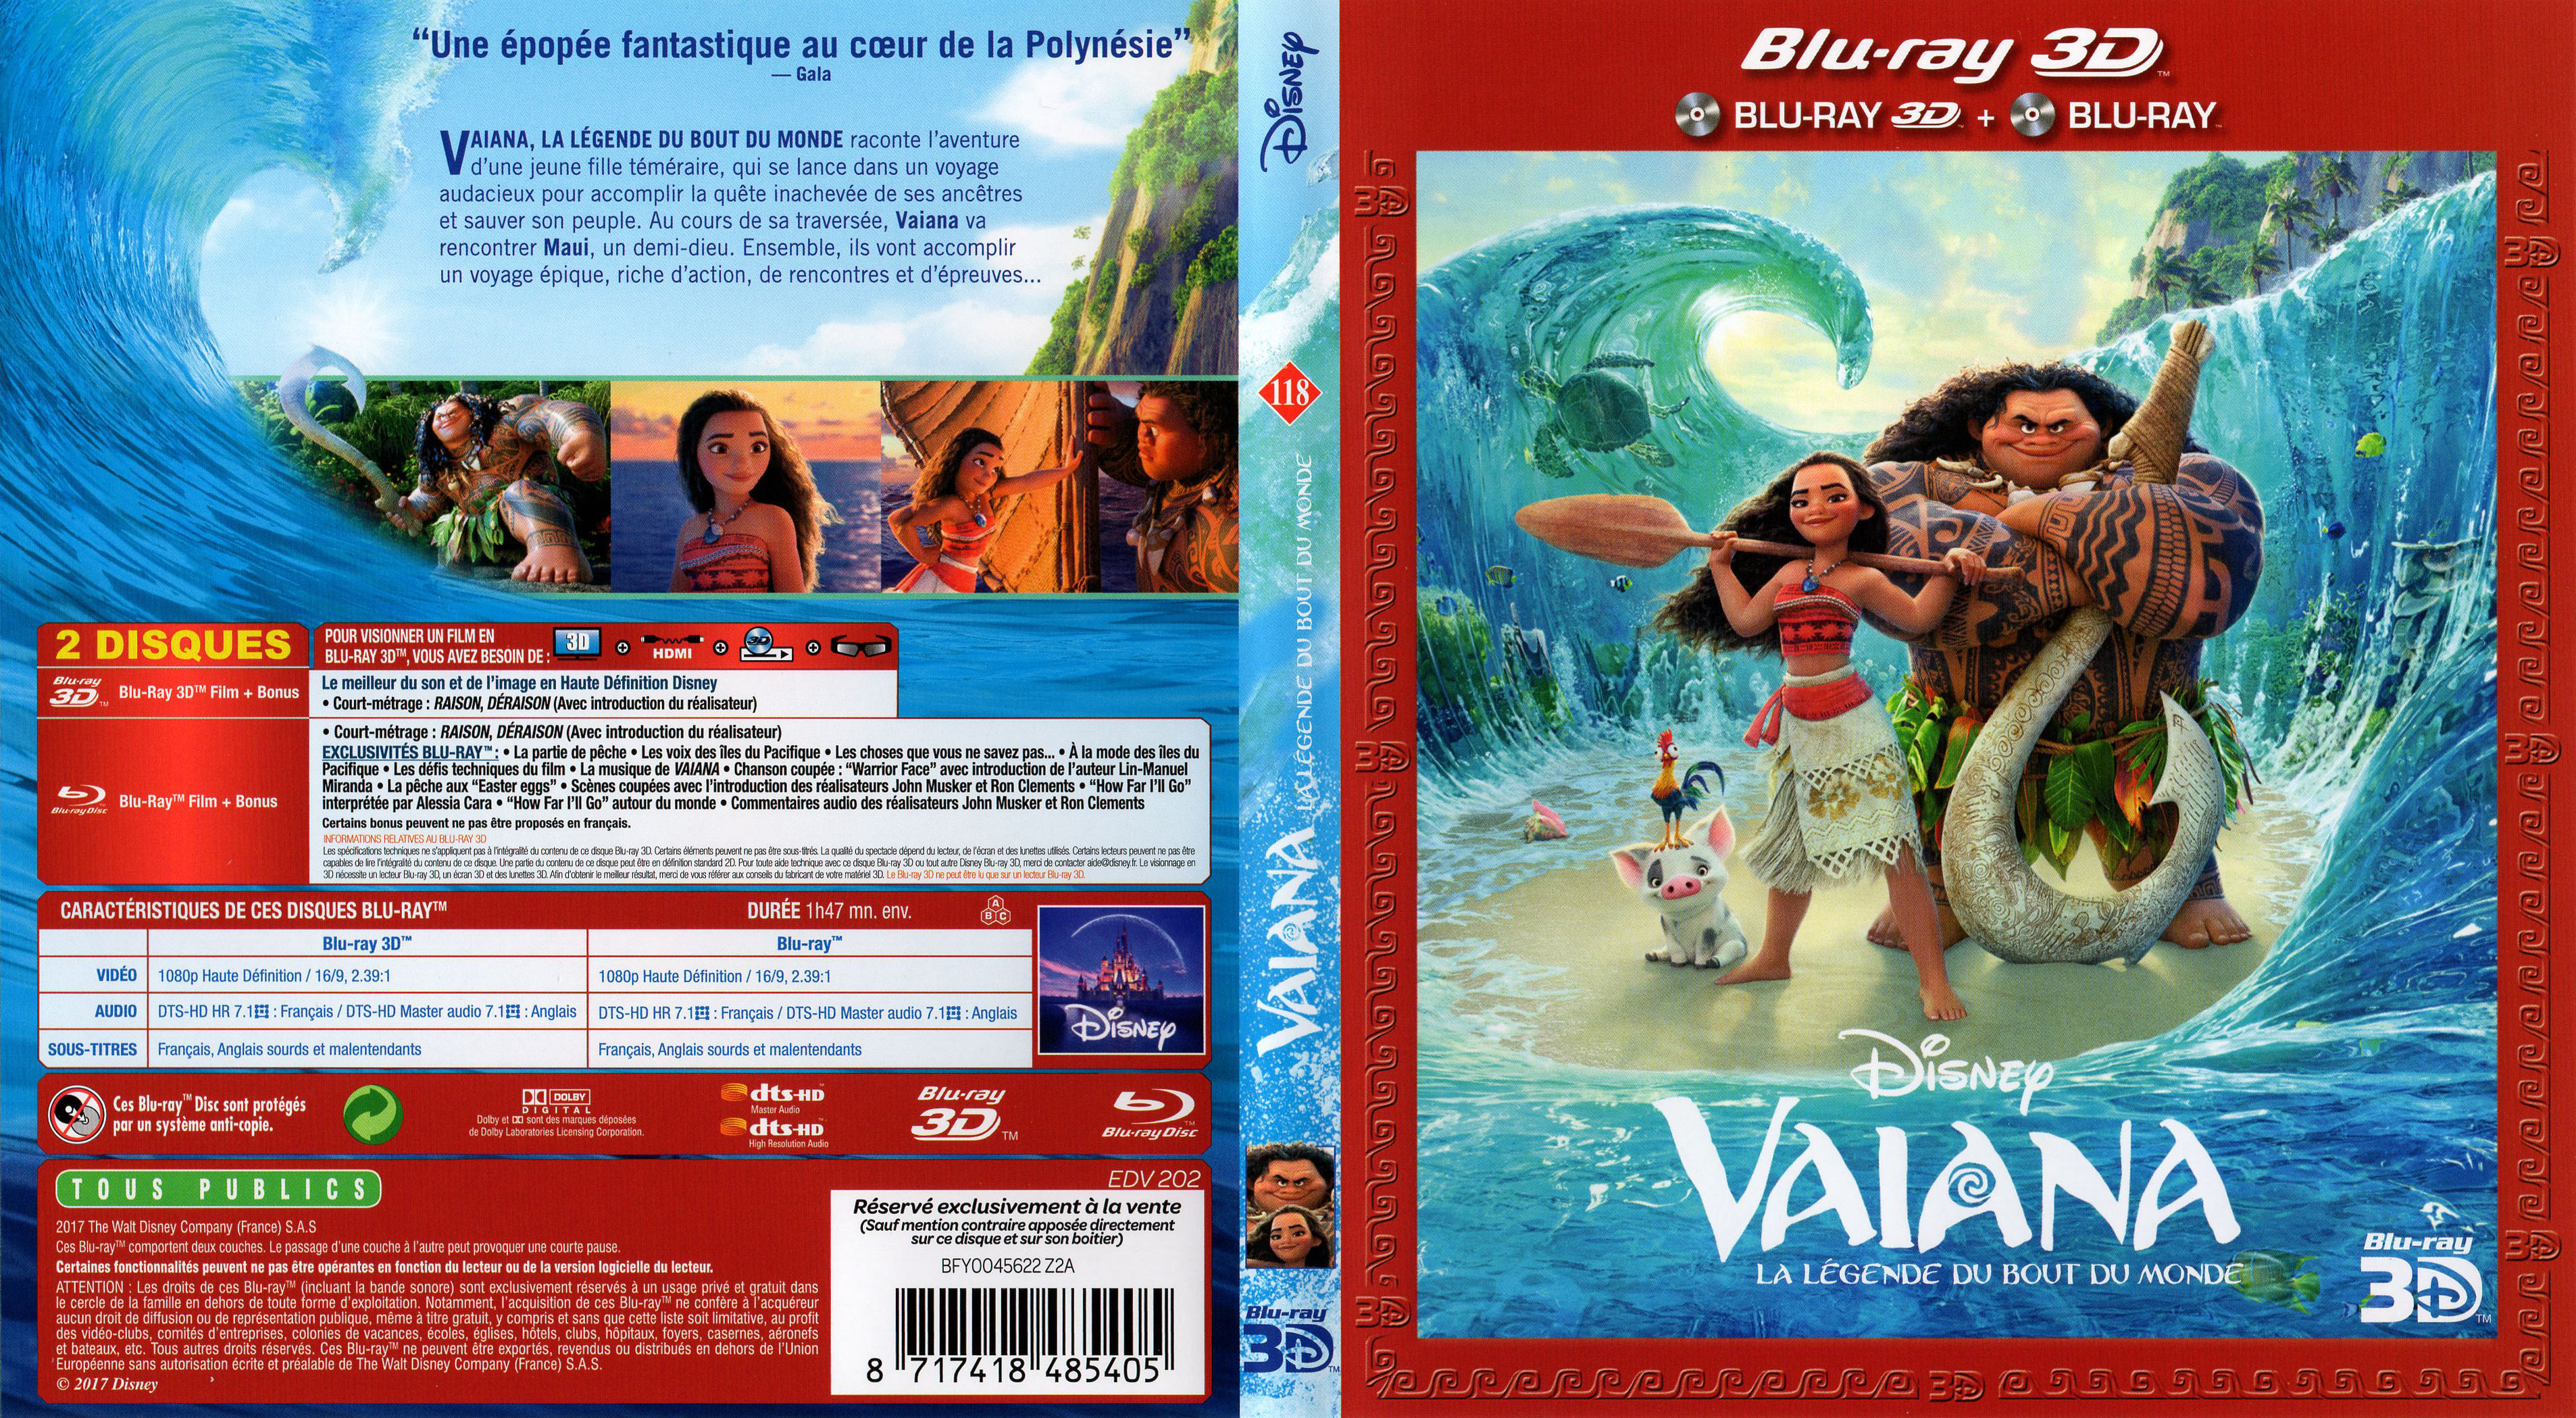 Jaquette DVD Vaiana, la lgende du bout du monde 3D (BLU-RAY)